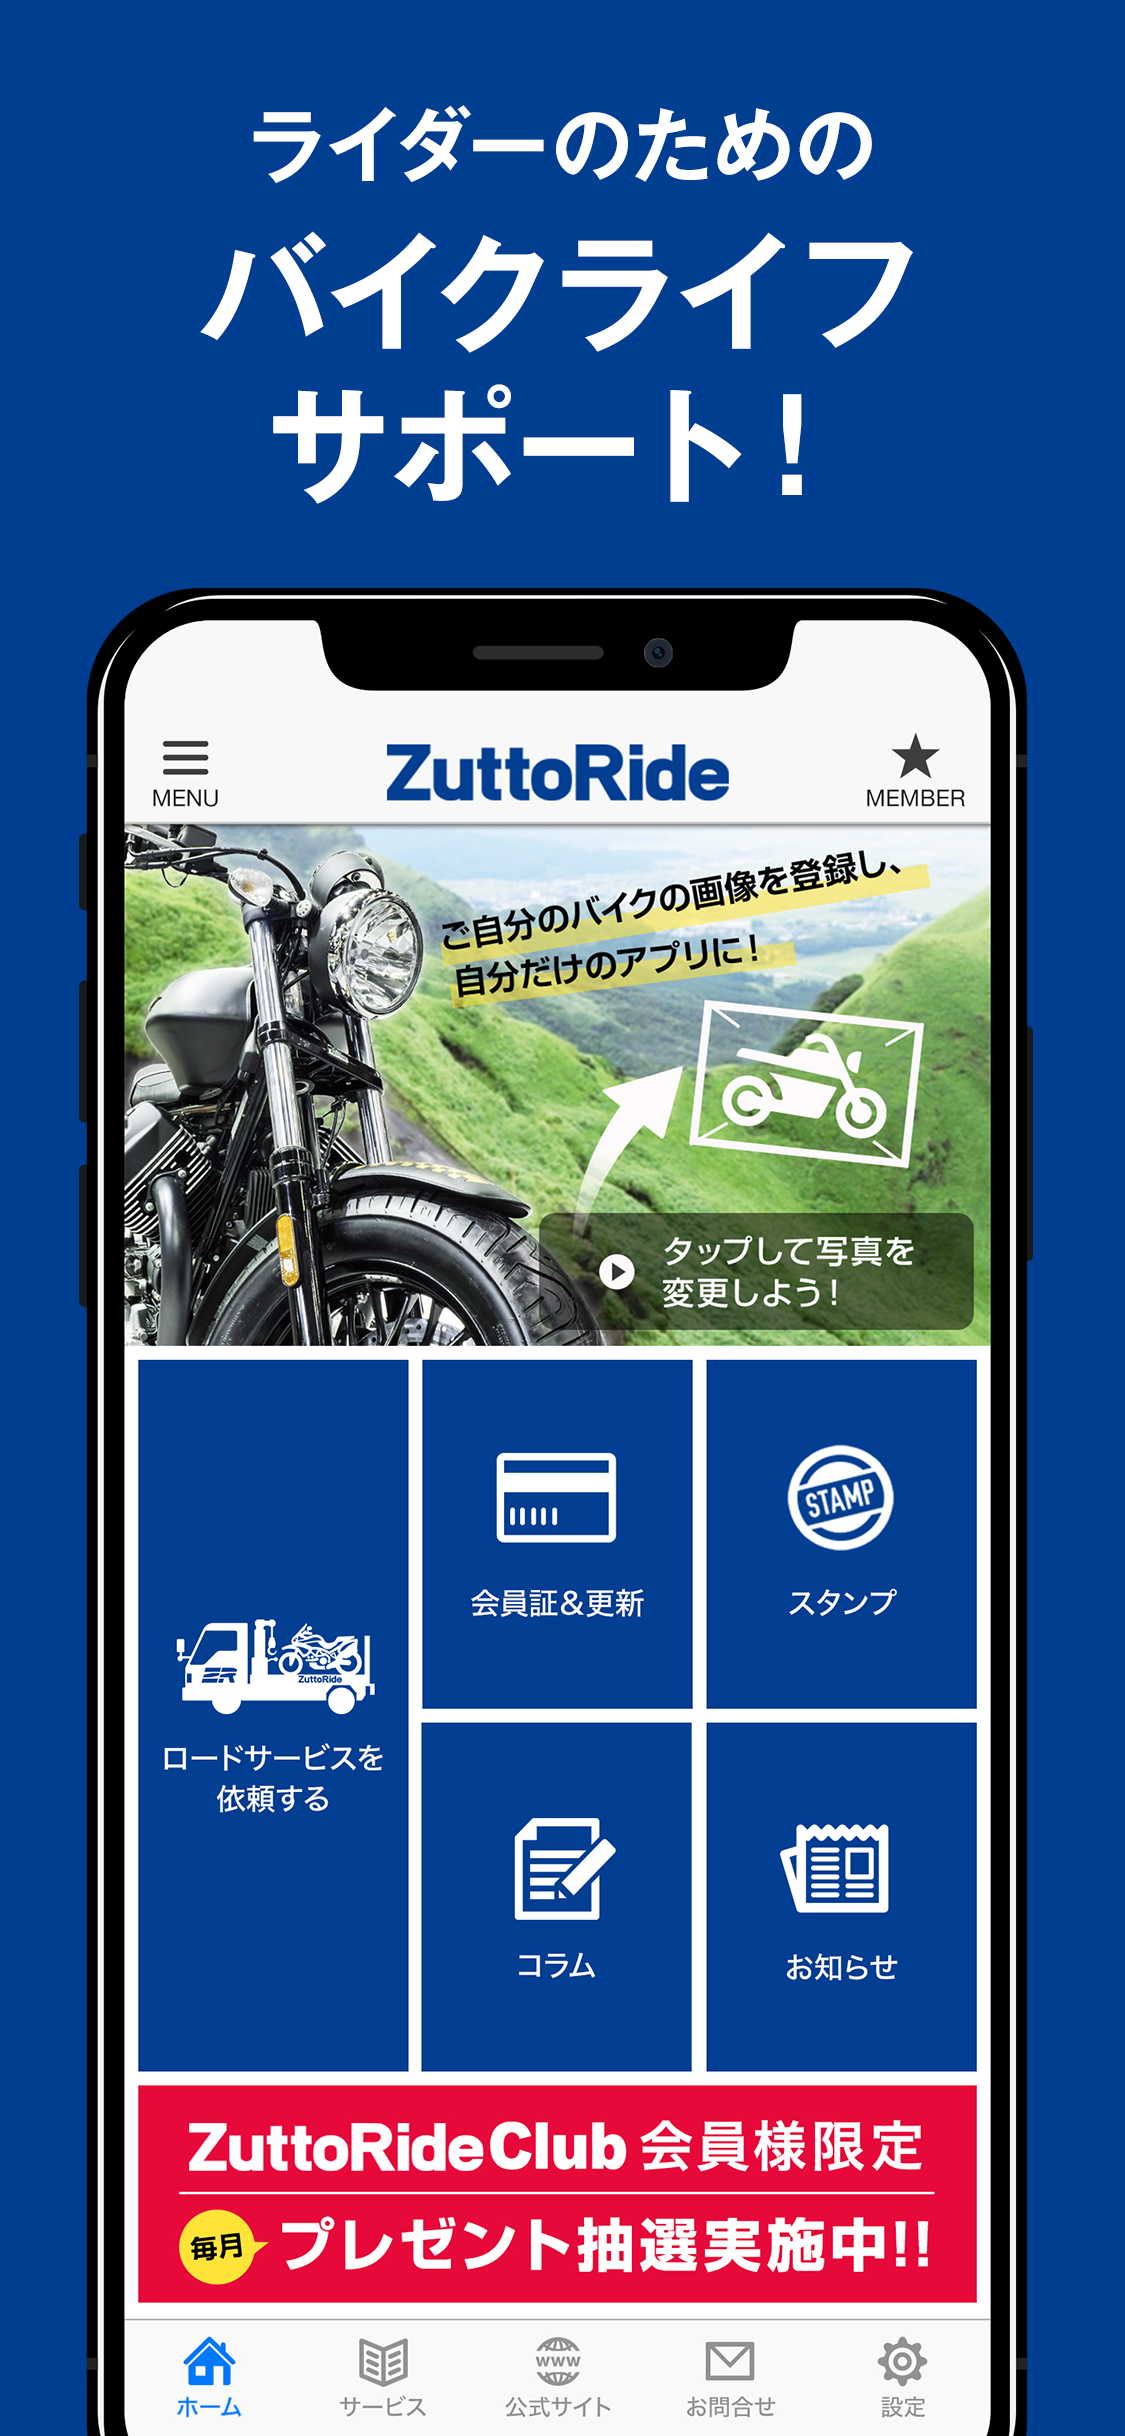 Zuttorideの公式アプリ Zuttoride Club会員証